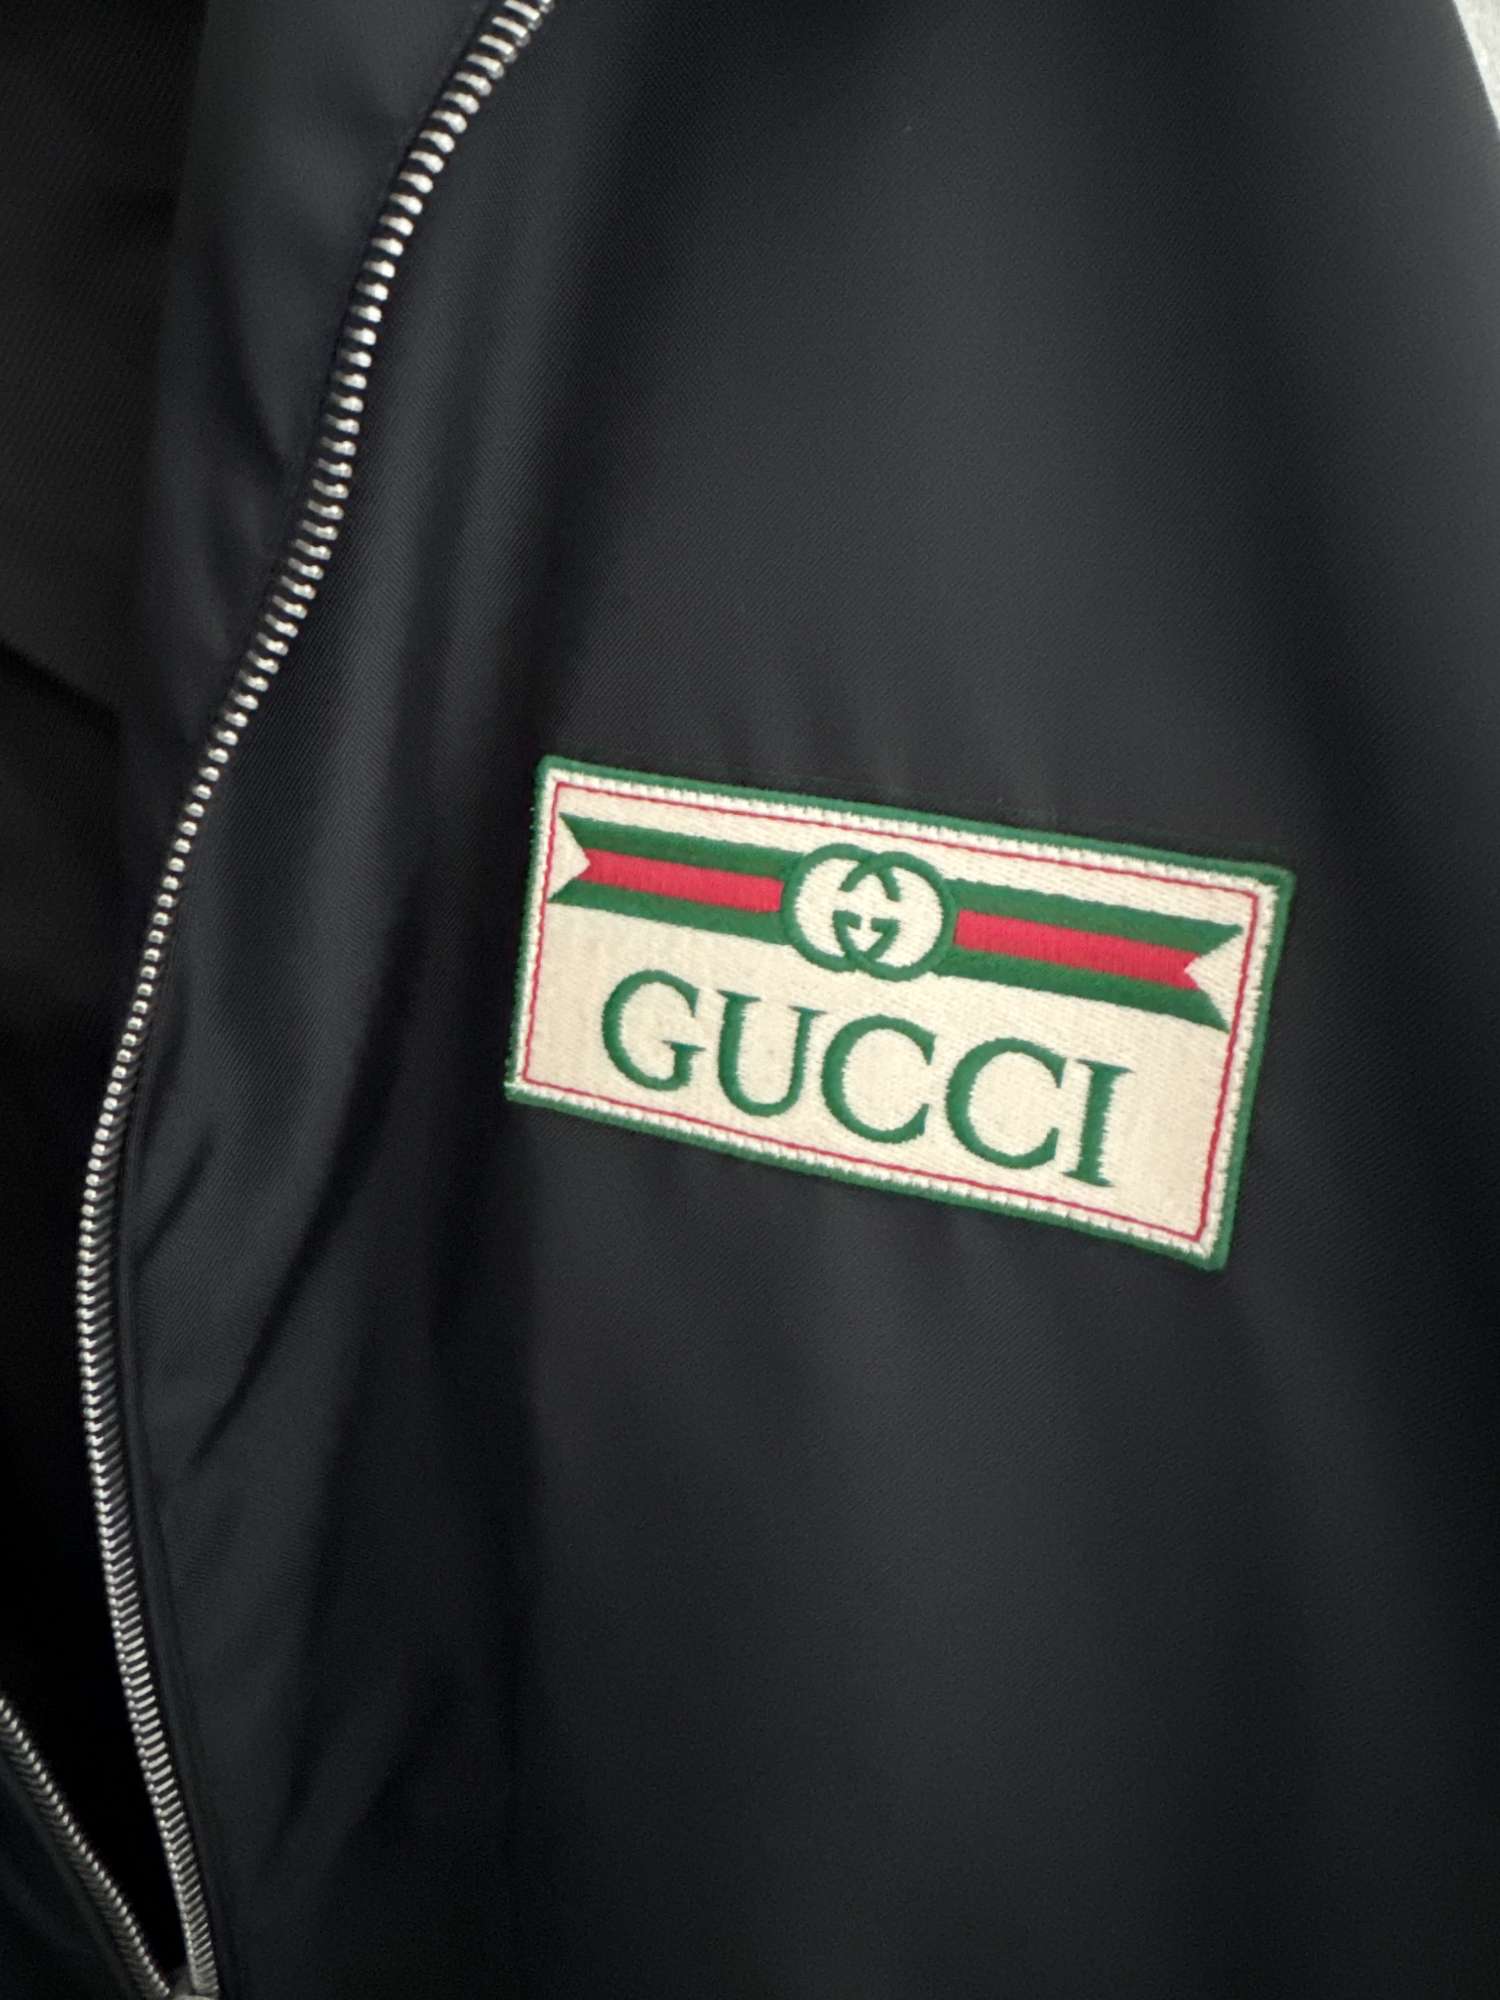 Gucci panska letna bunda velkost 52